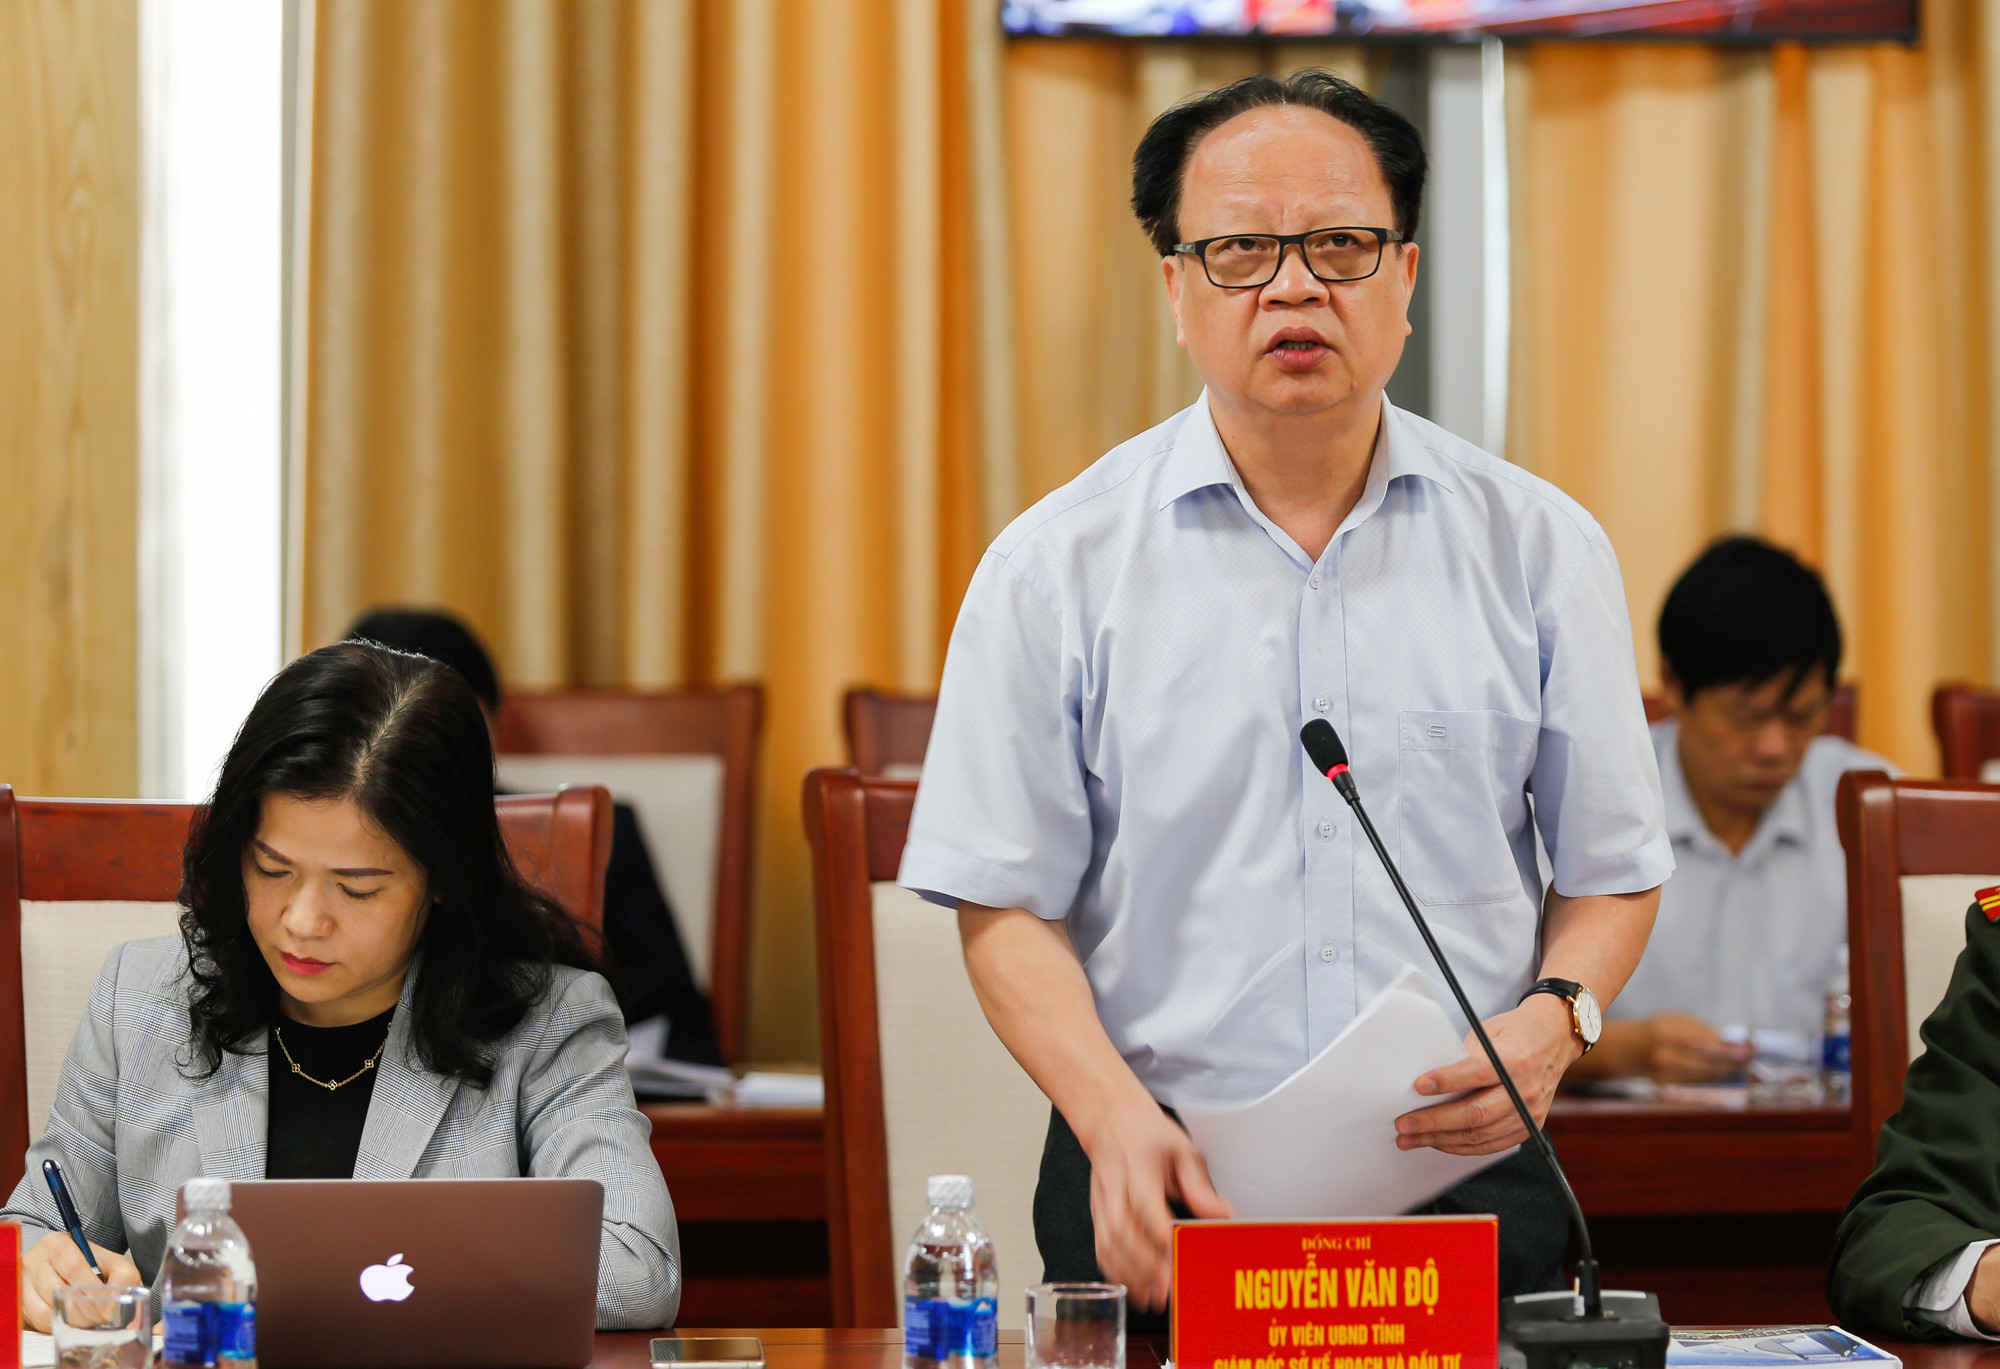 Giám đốc Sở KH&ĐT Nguyễn Văn Độ phát biểu tại cuộc làm việc. Ảnh: Đức Anh